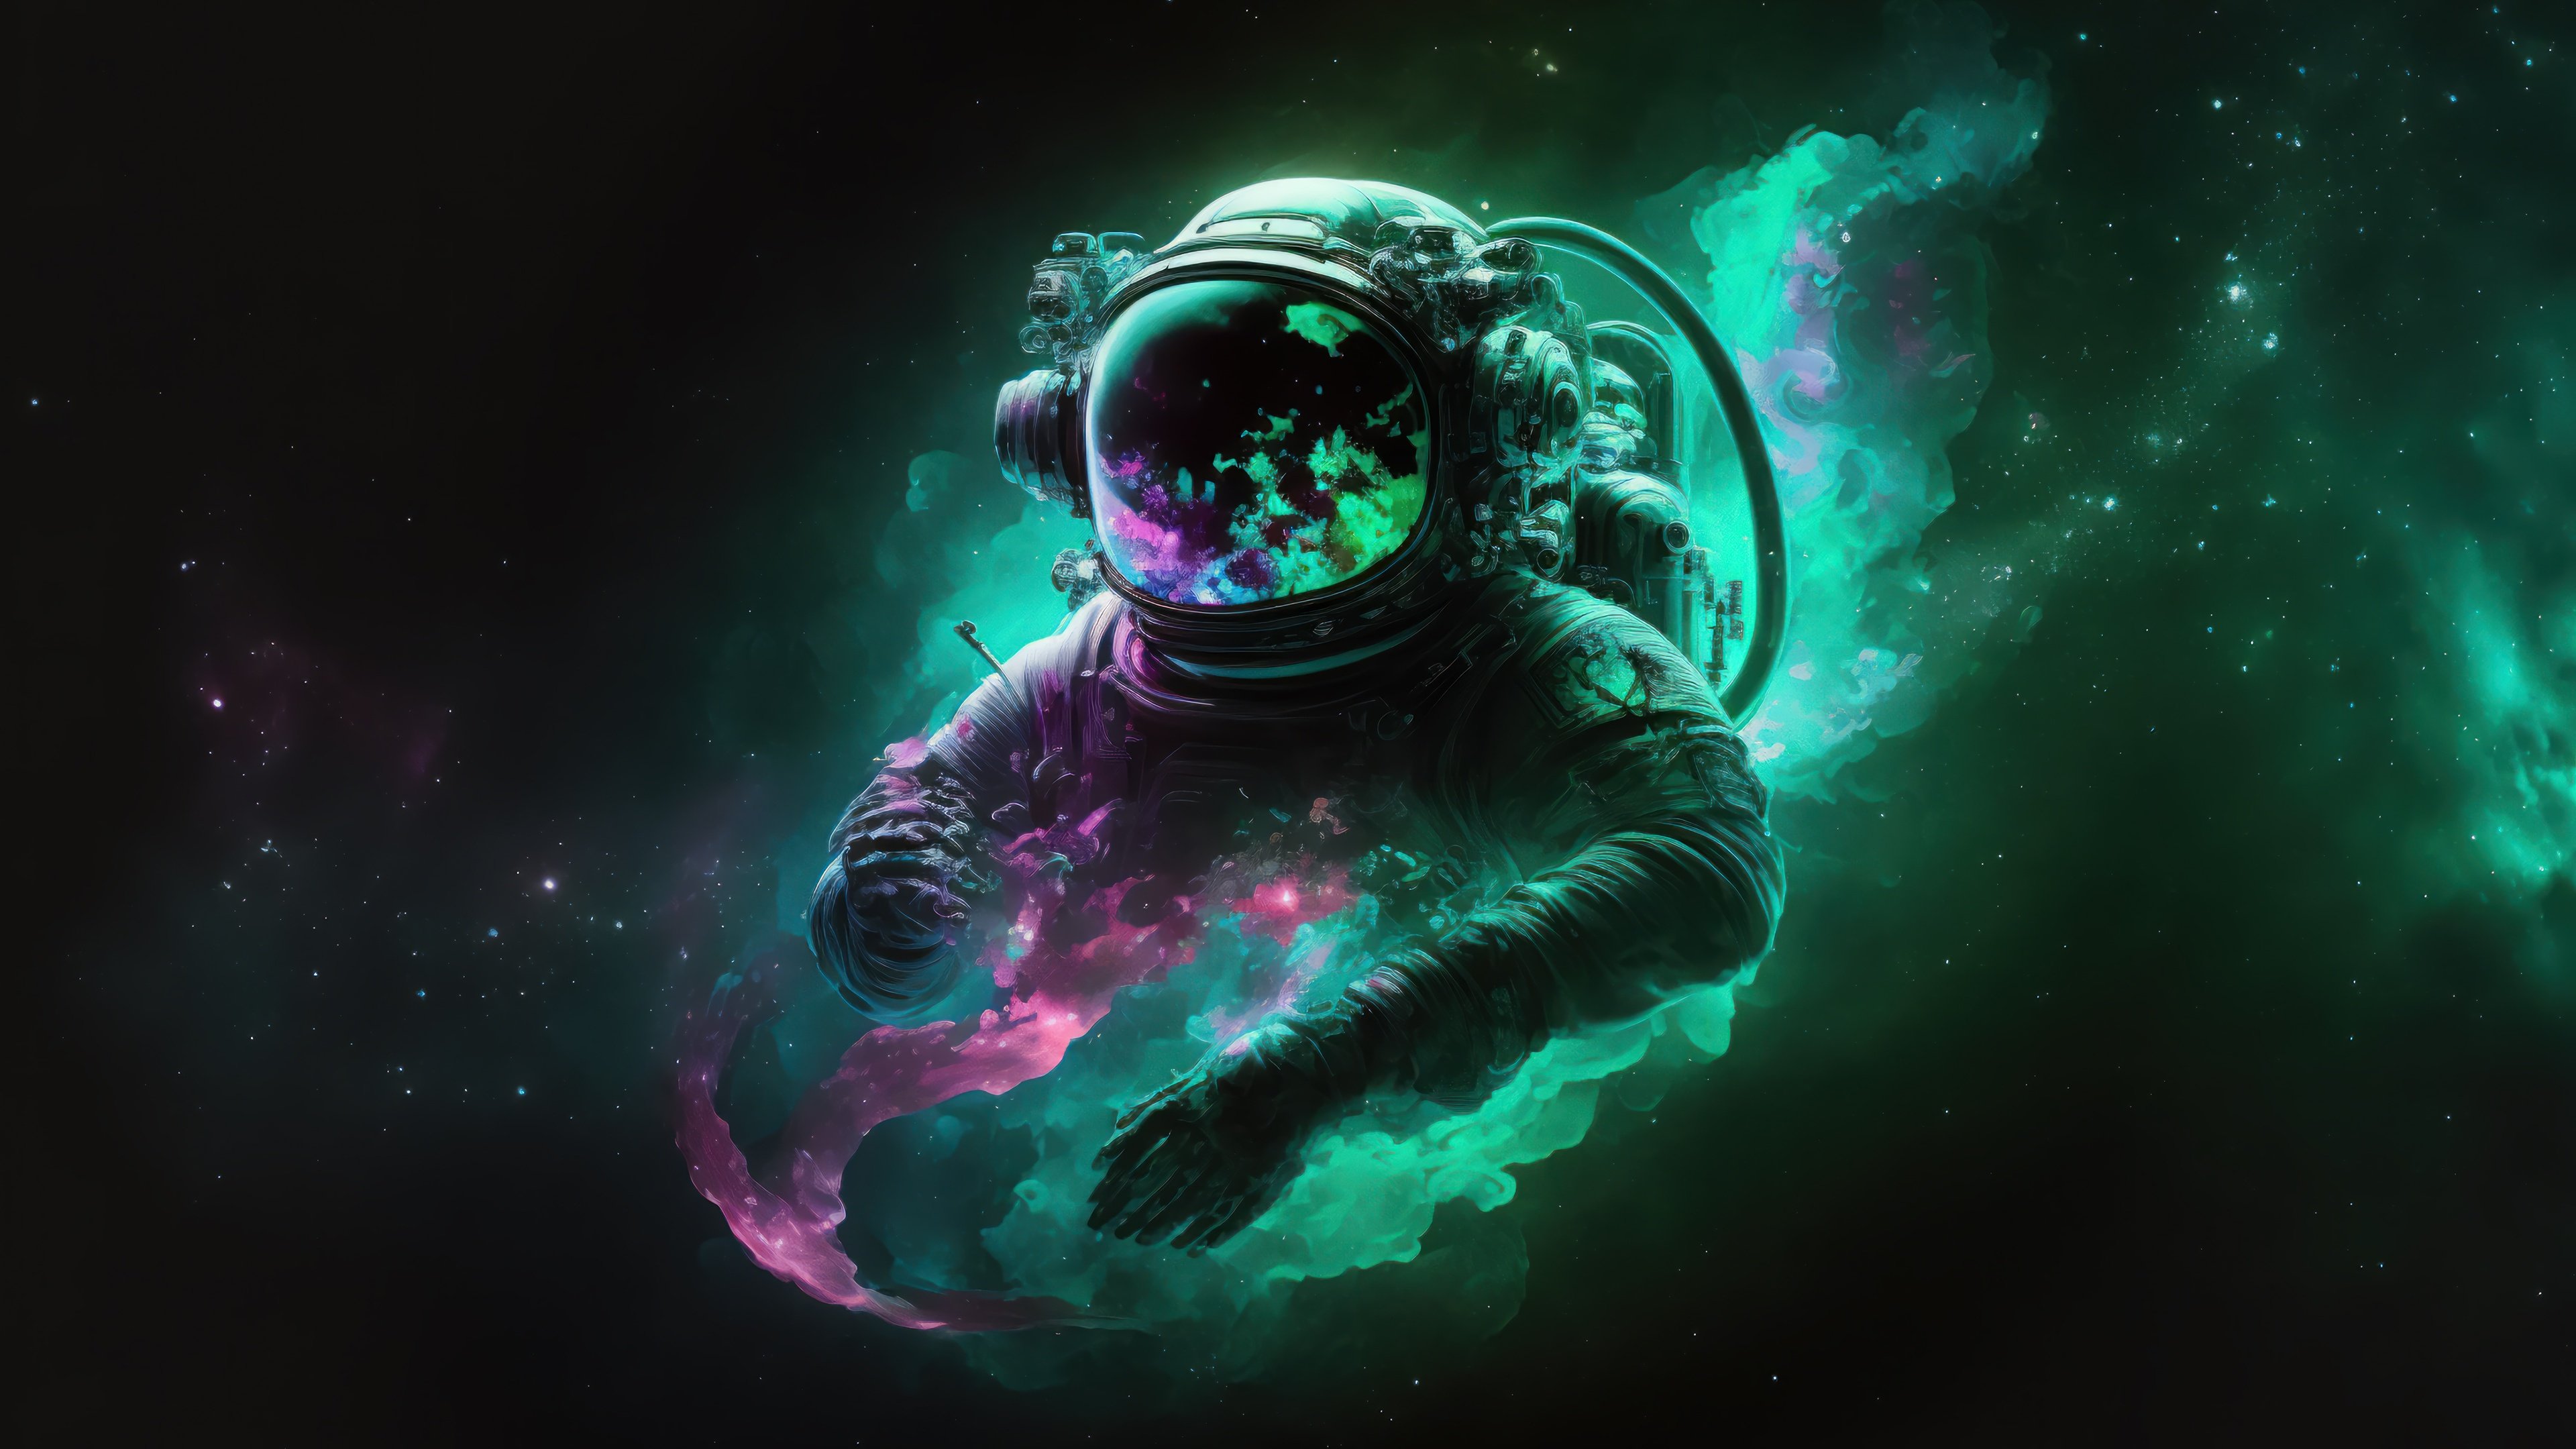 Fondos de pantalla Astronaut digital art colors